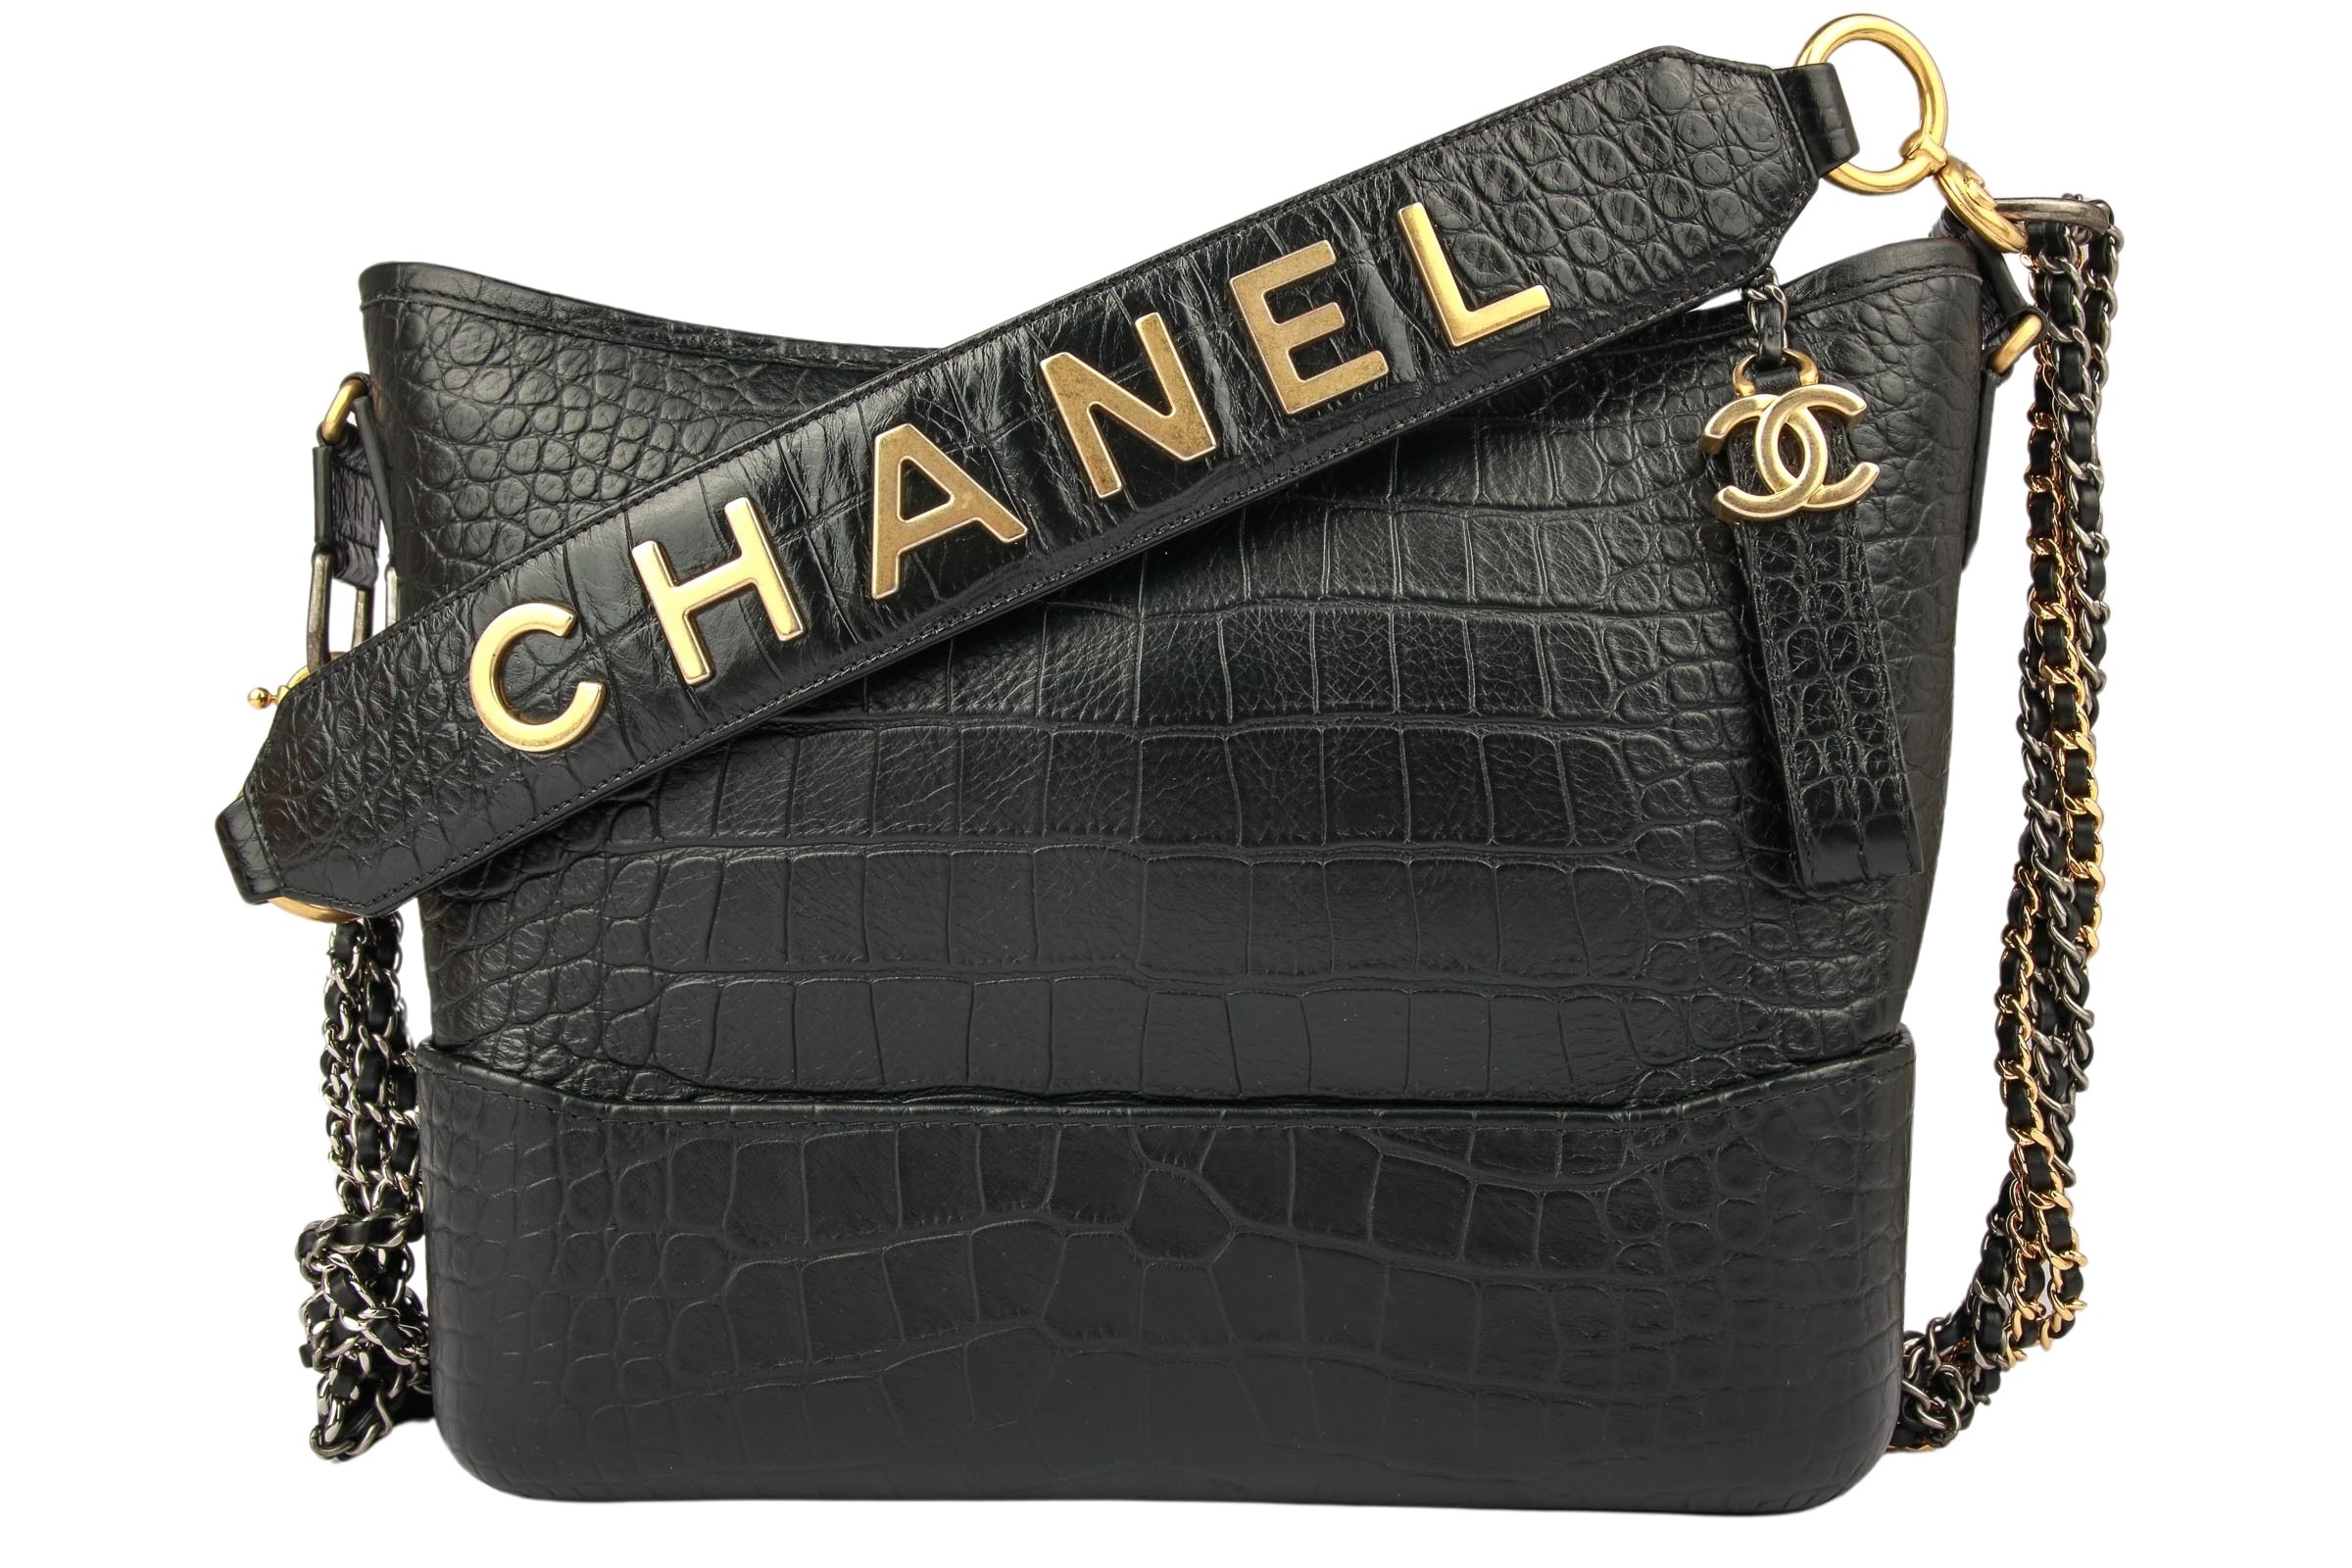 Chanel Handbags & Accessories